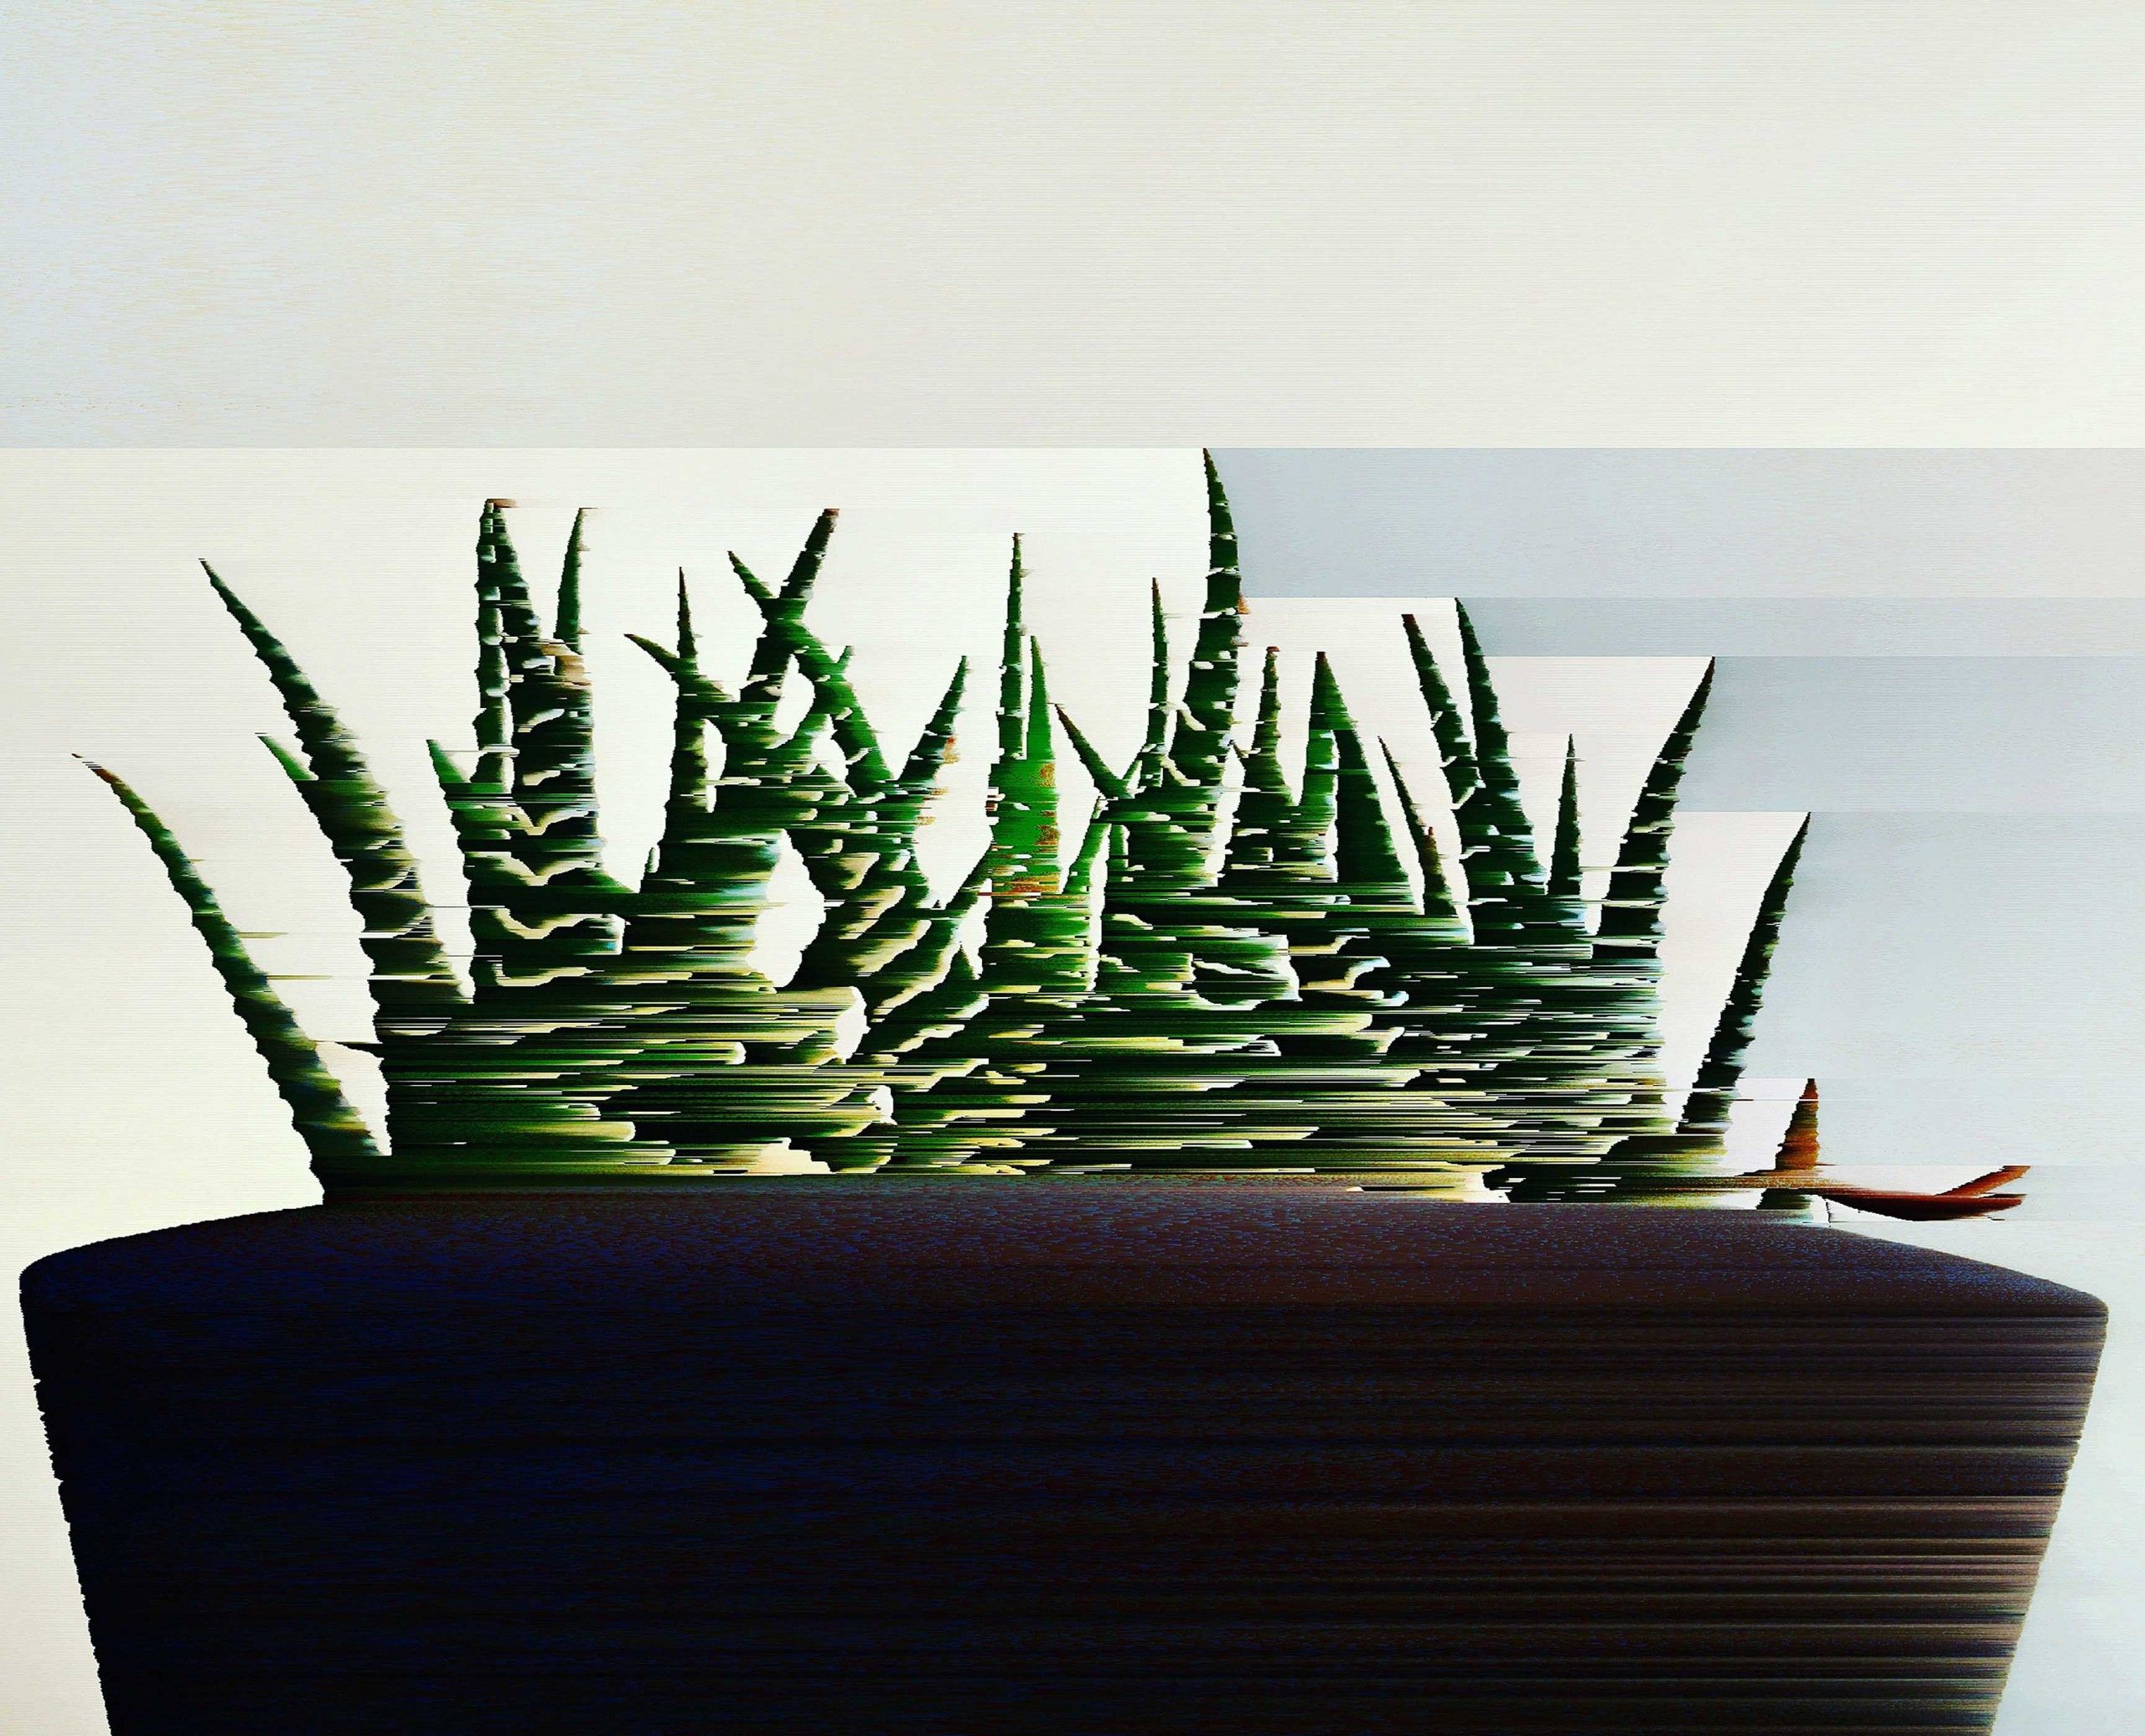 Cactus by Katie Hallam